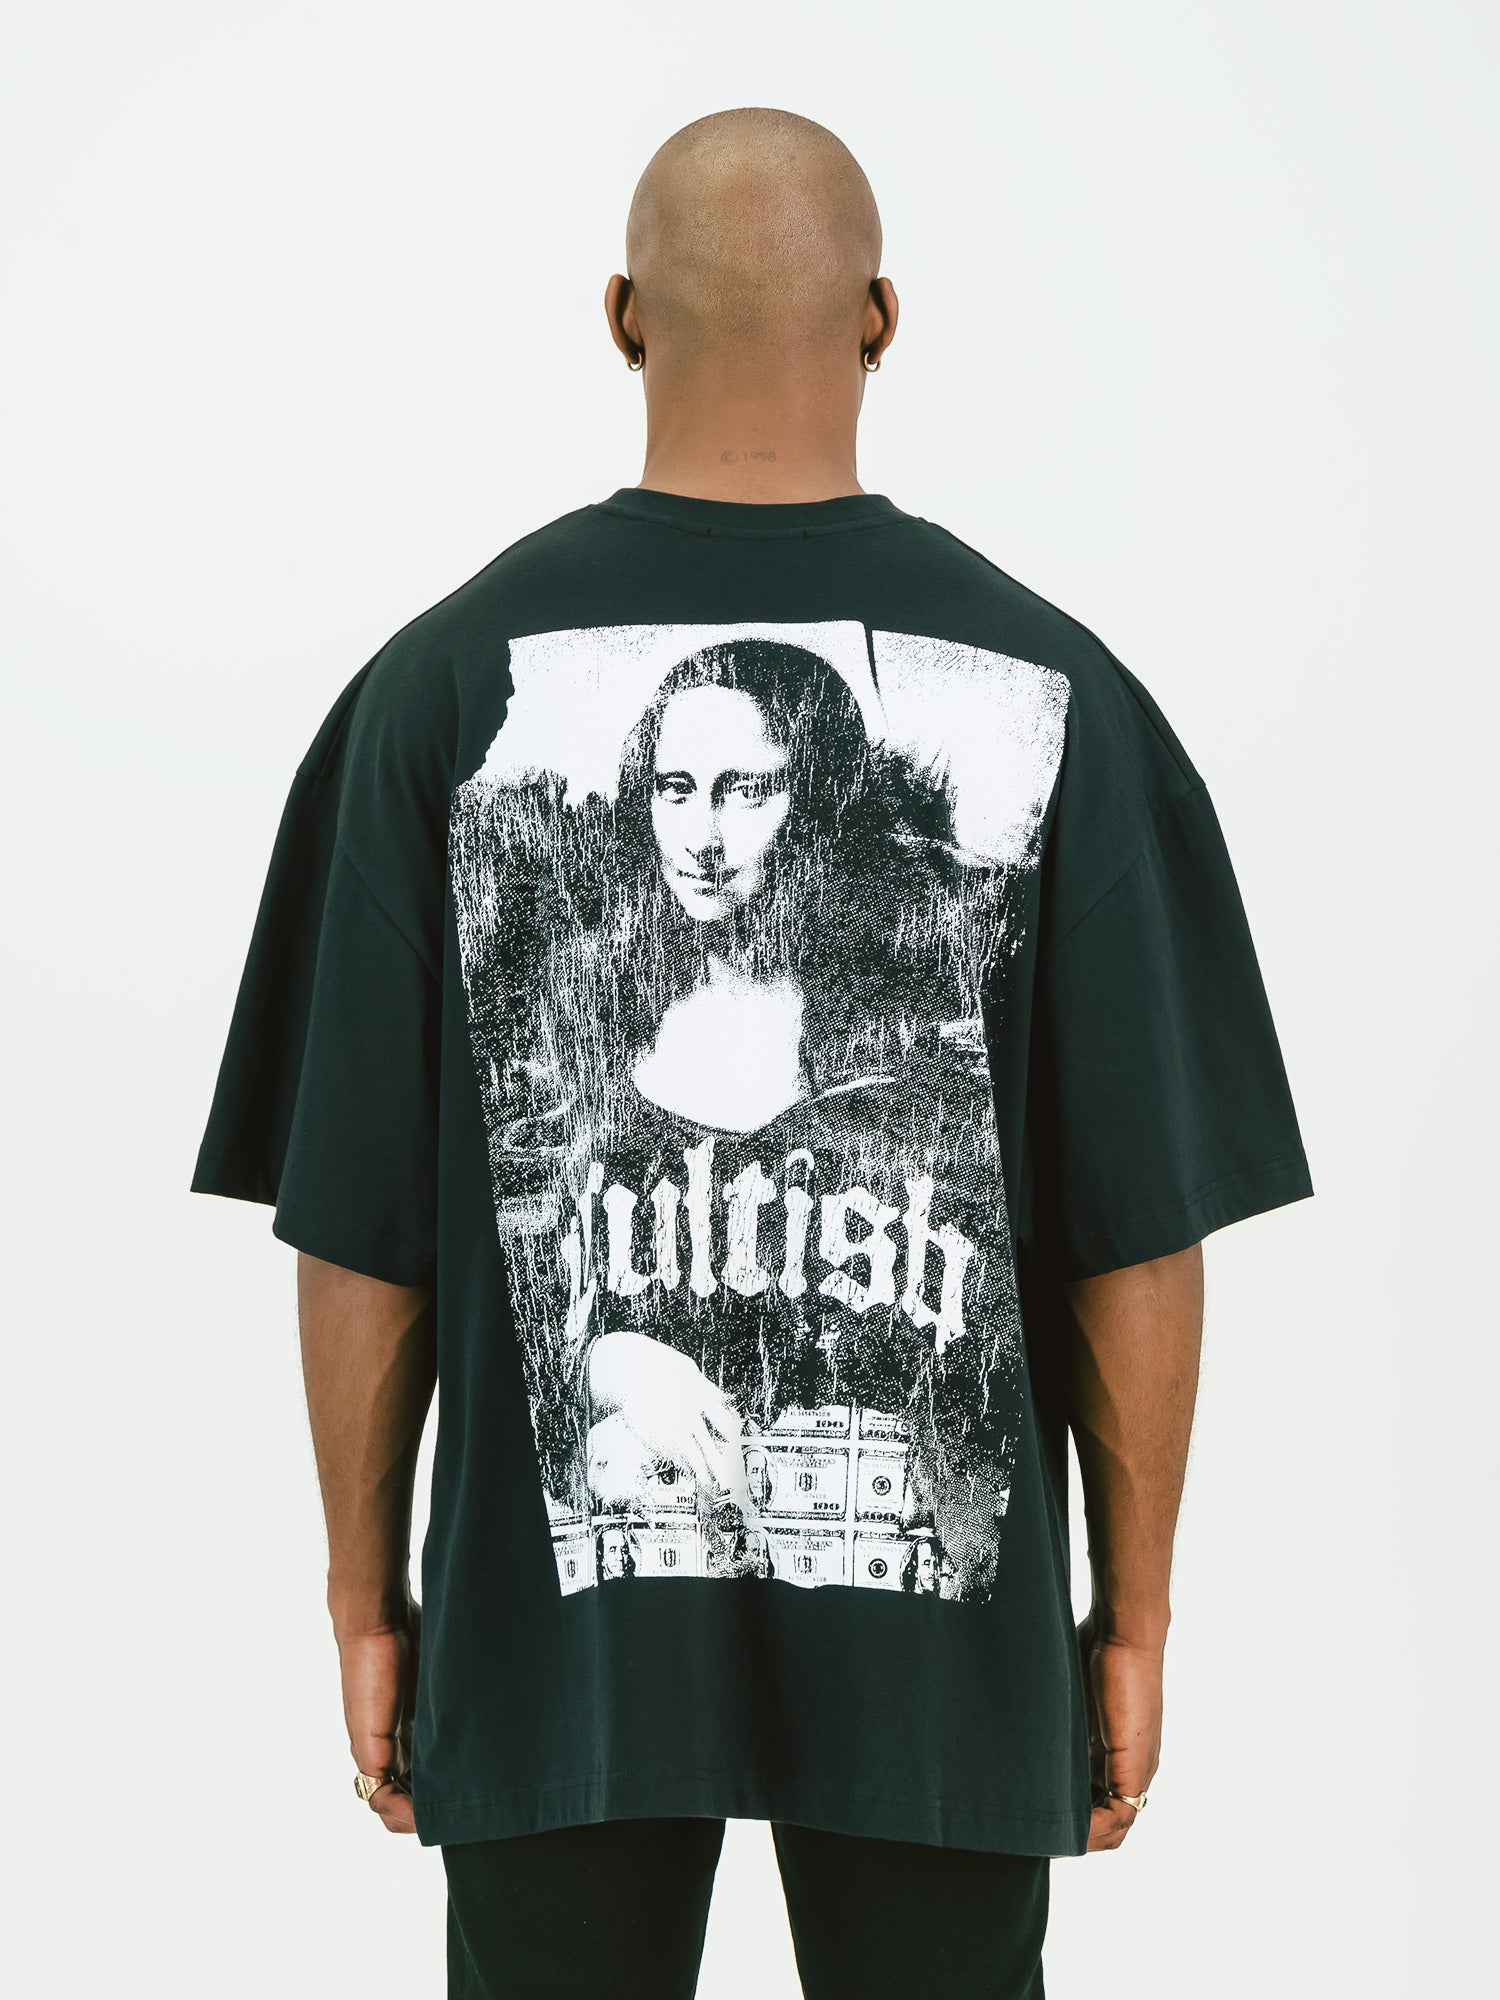 W/B Mona Li$a Oversized T-Shirt